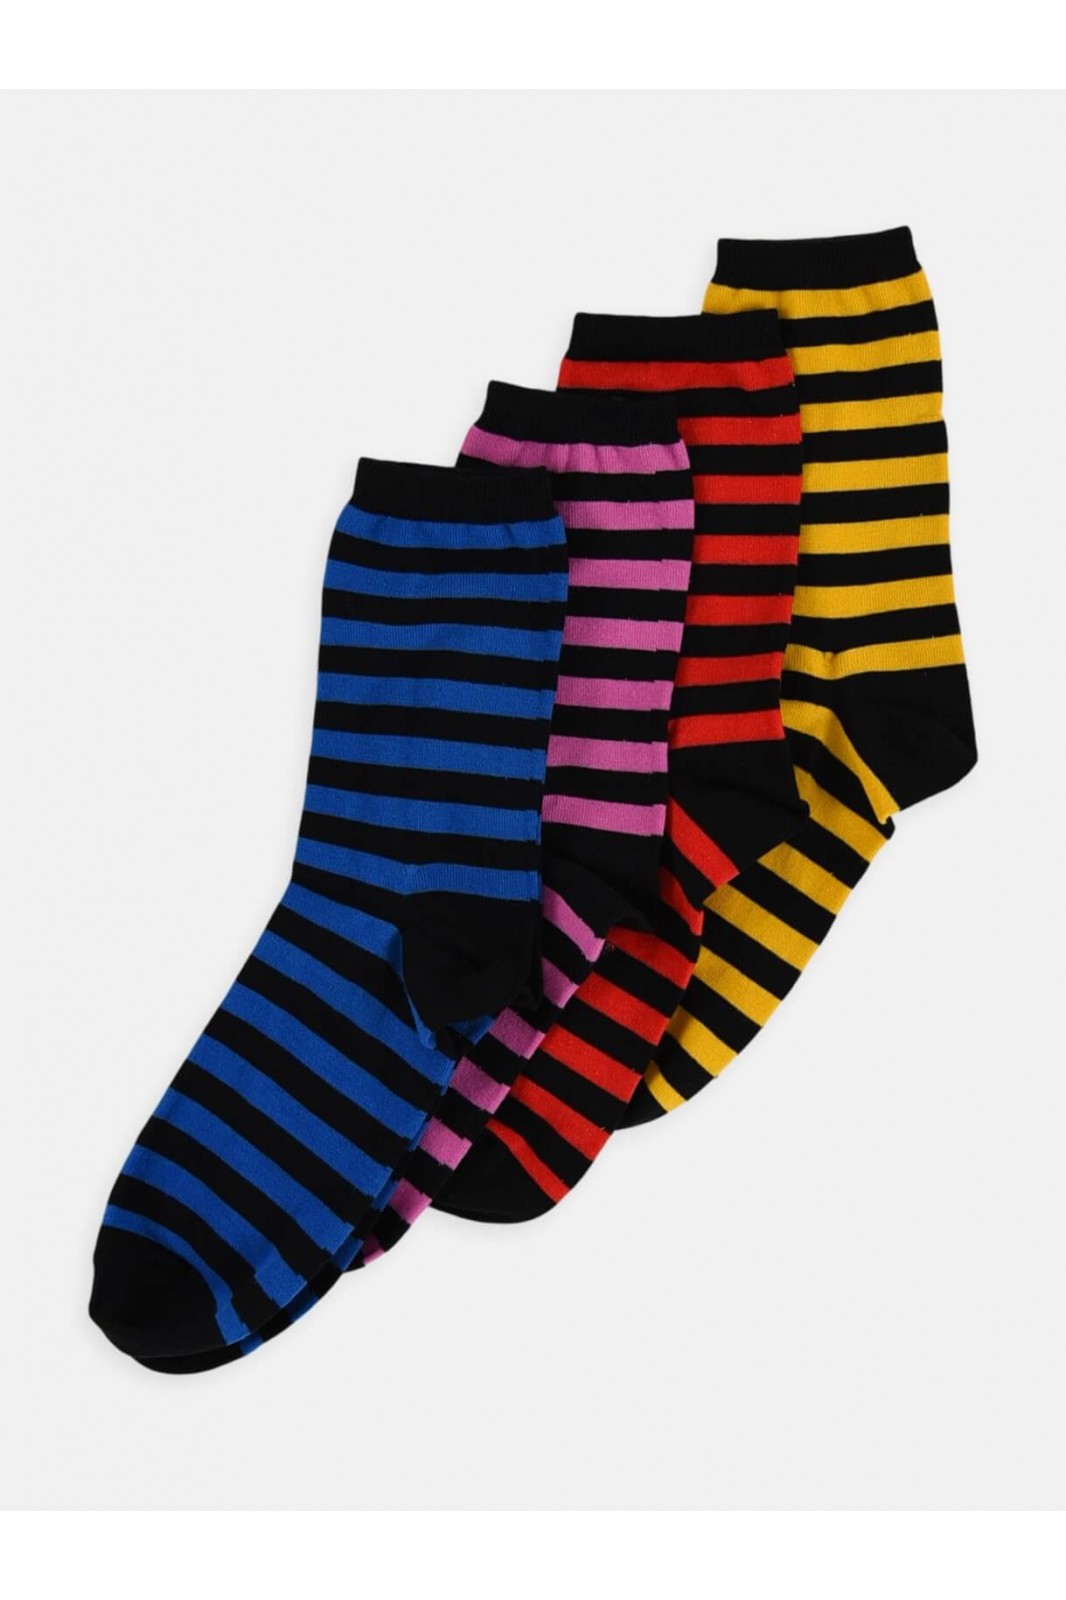 Womens socks LA DIVA Striped in 4 Shades